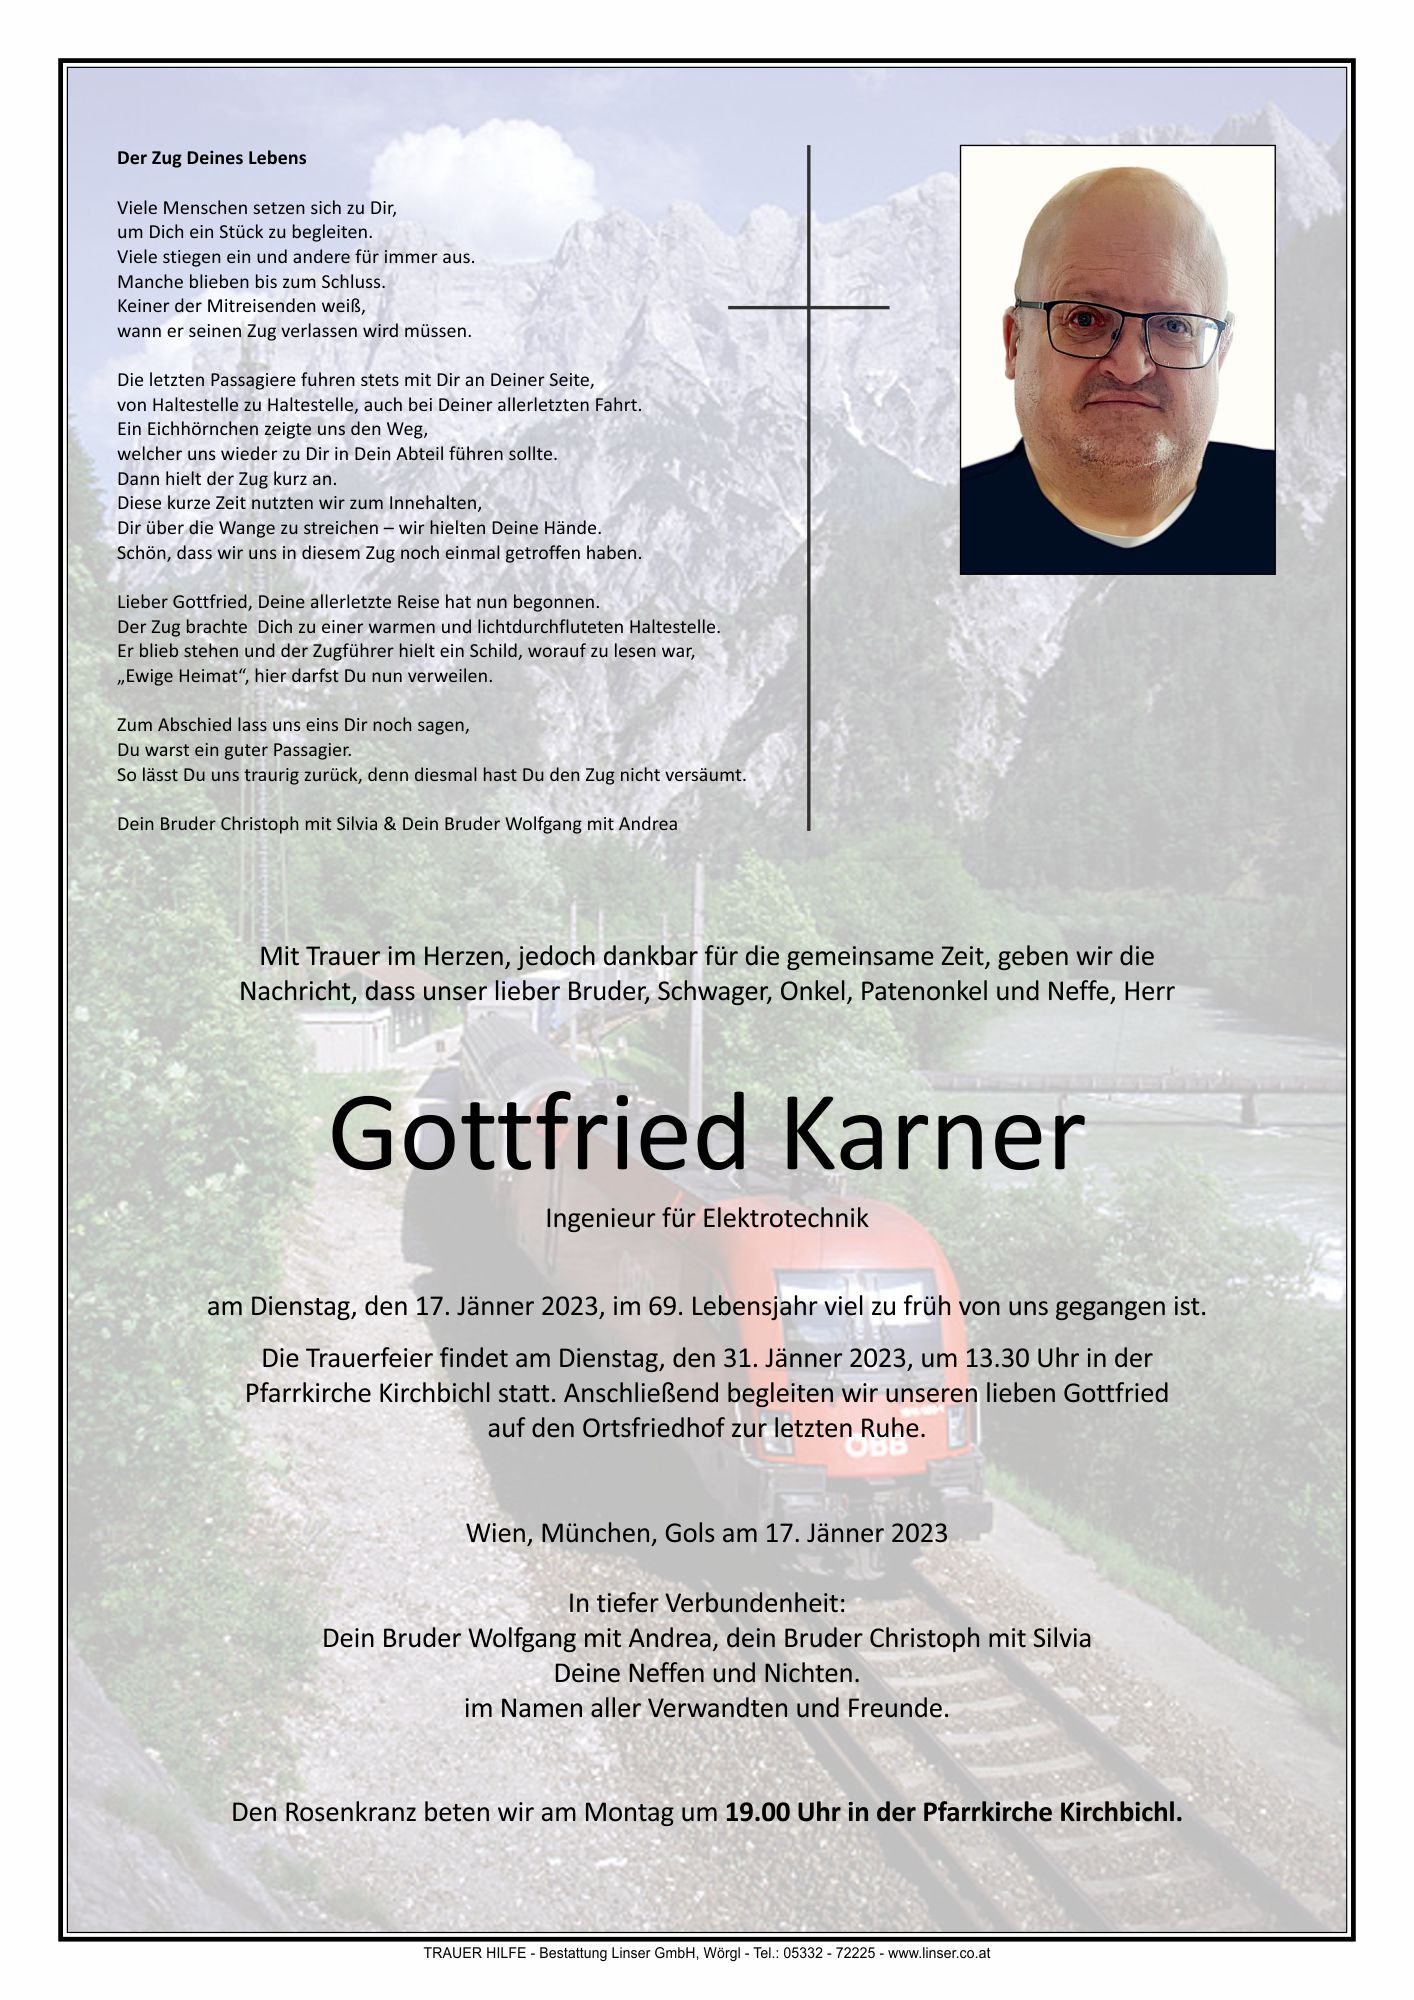 Gottfried Karner